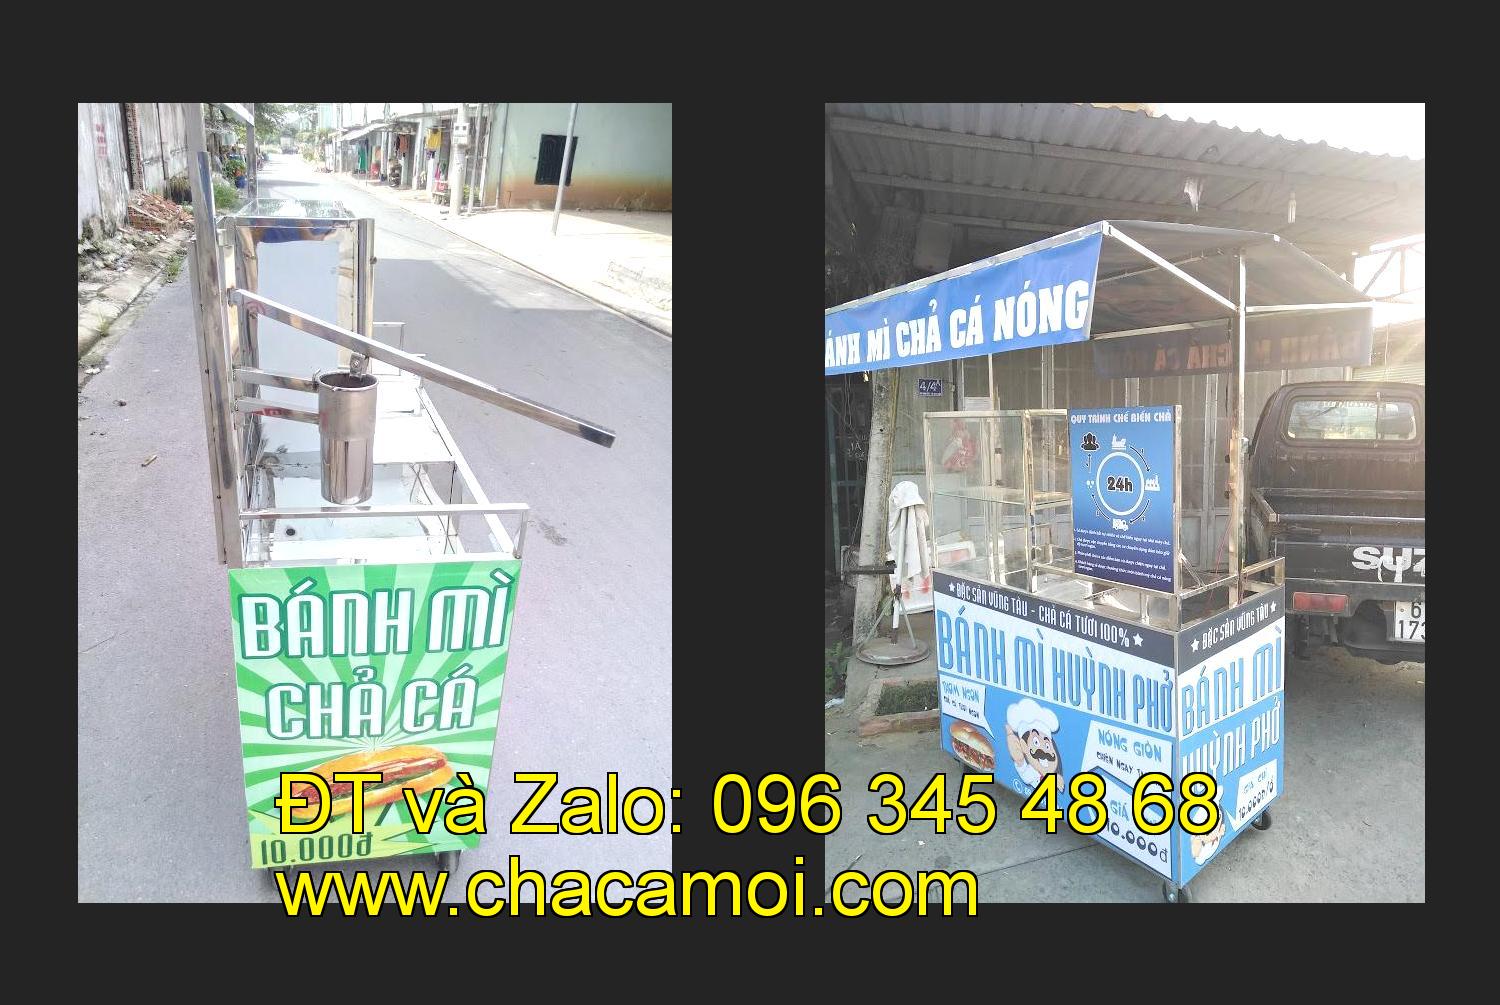 Bán xe bánh mì chả cá tại tỉnh Cà Mau